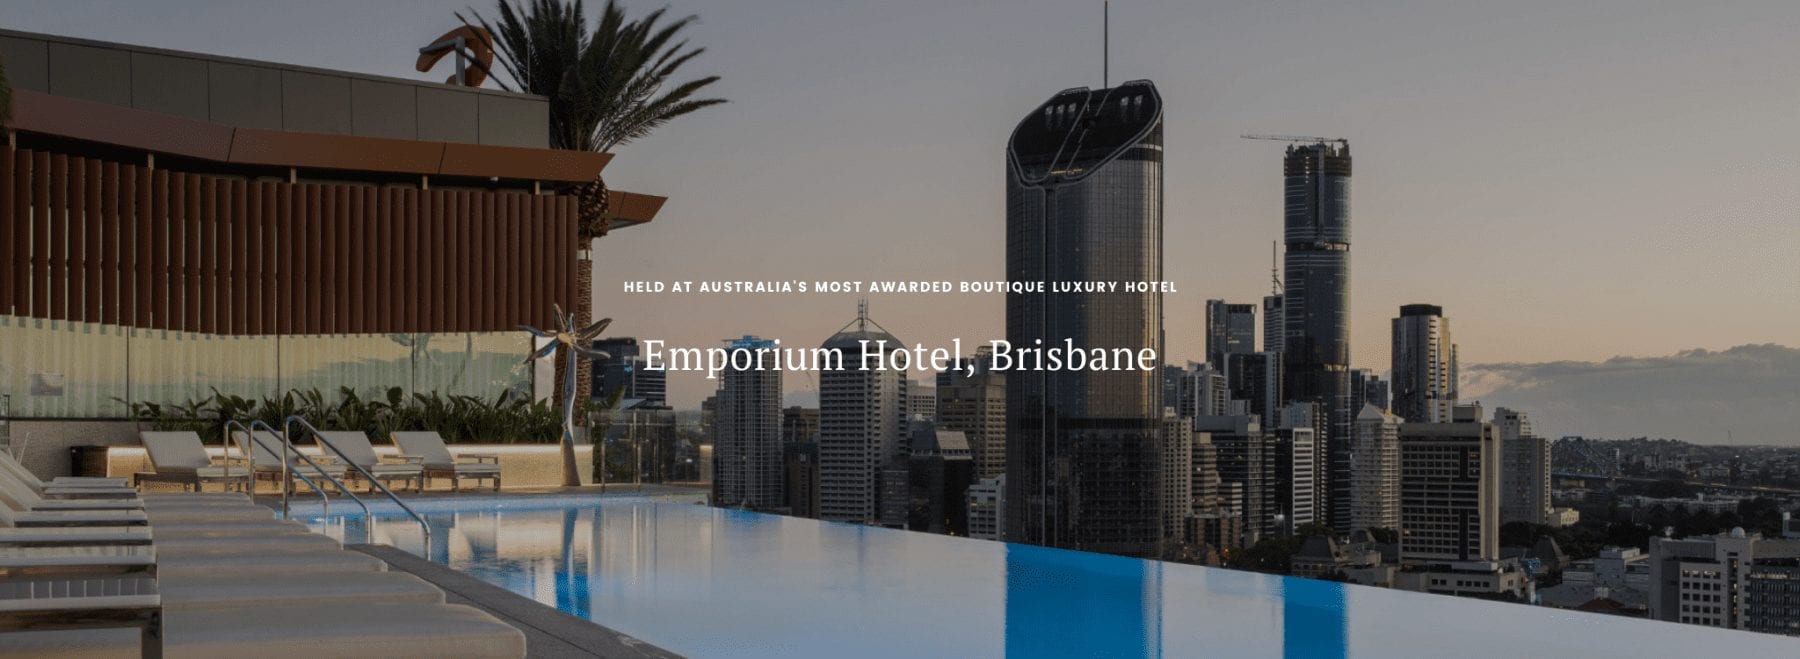 A wellbeing retreat is being held at Emporium Hotel, Brisbane.